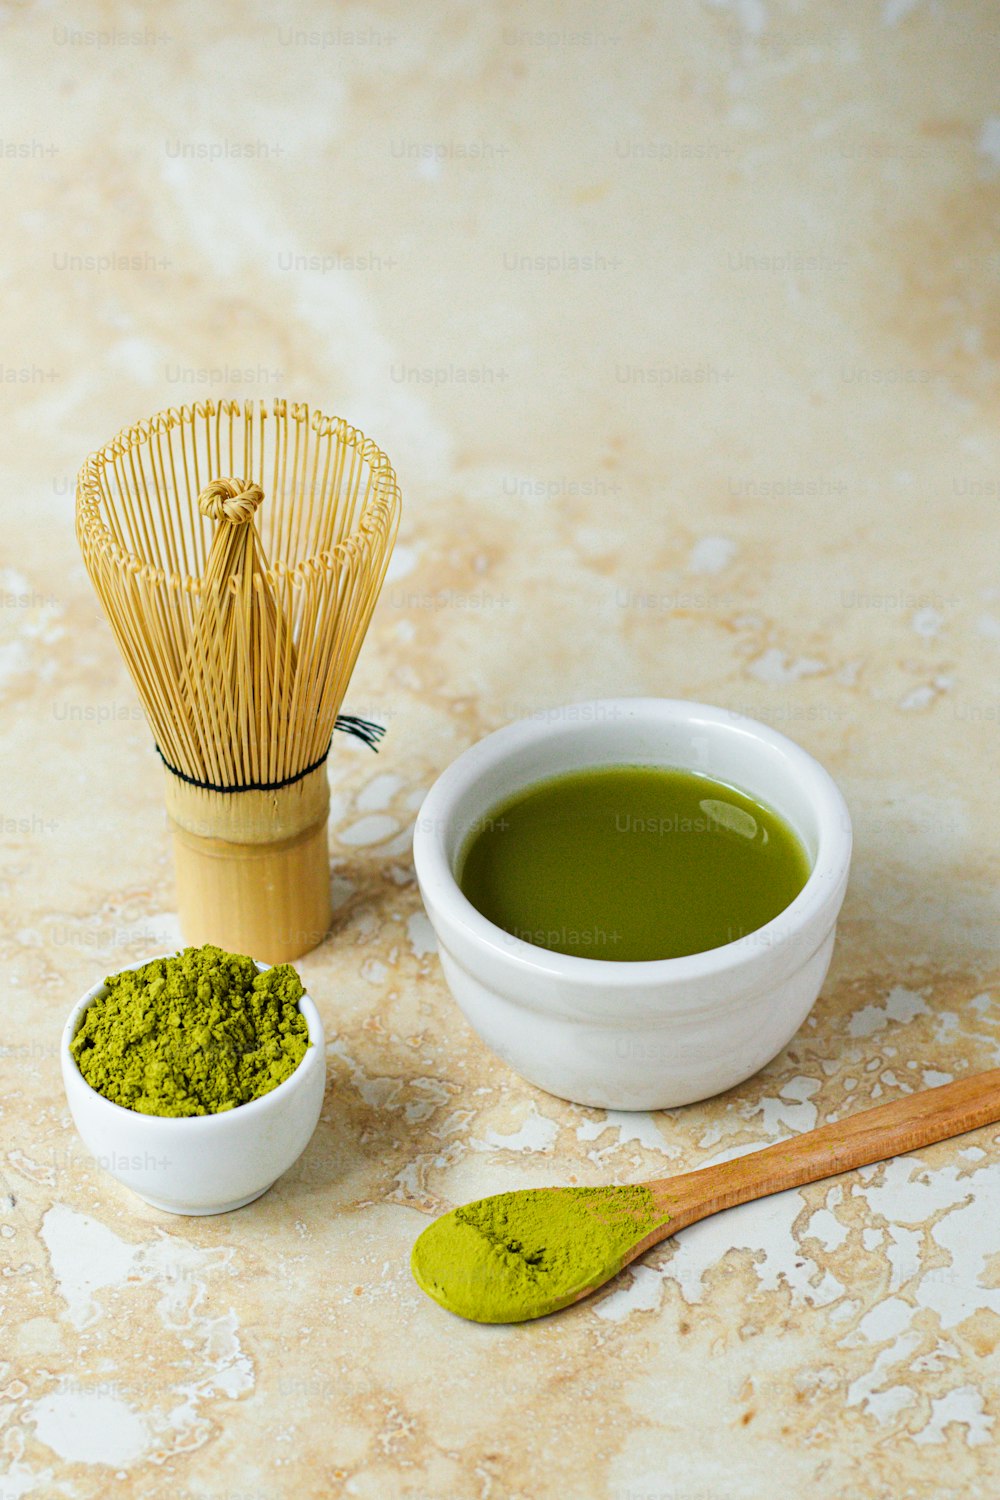 una ciotola di tè verde accanto a una frusta e un cucchiaio